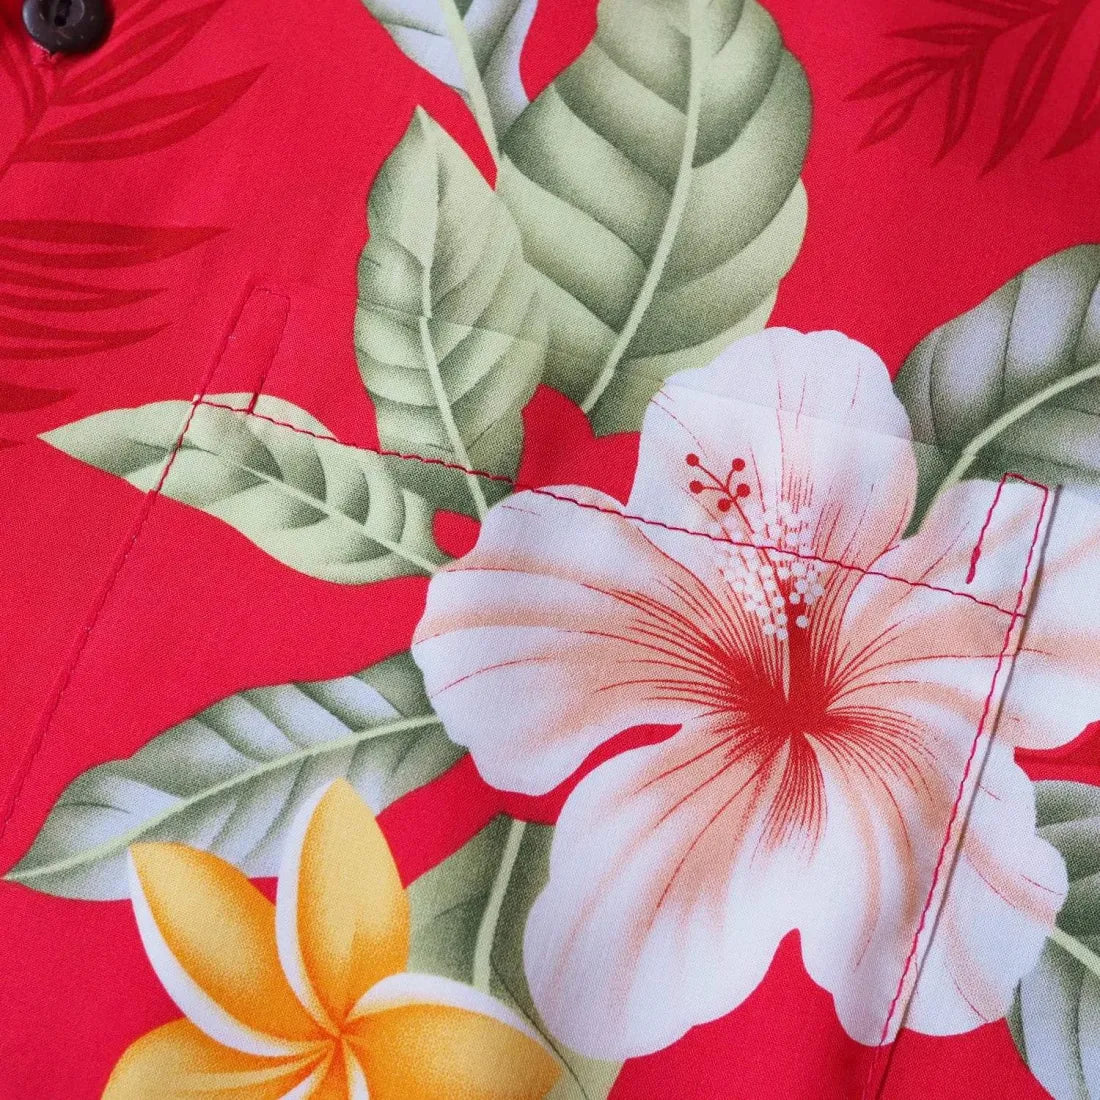 Makaha Red Hawaiian Rayon Shirt - Made In Hawaii